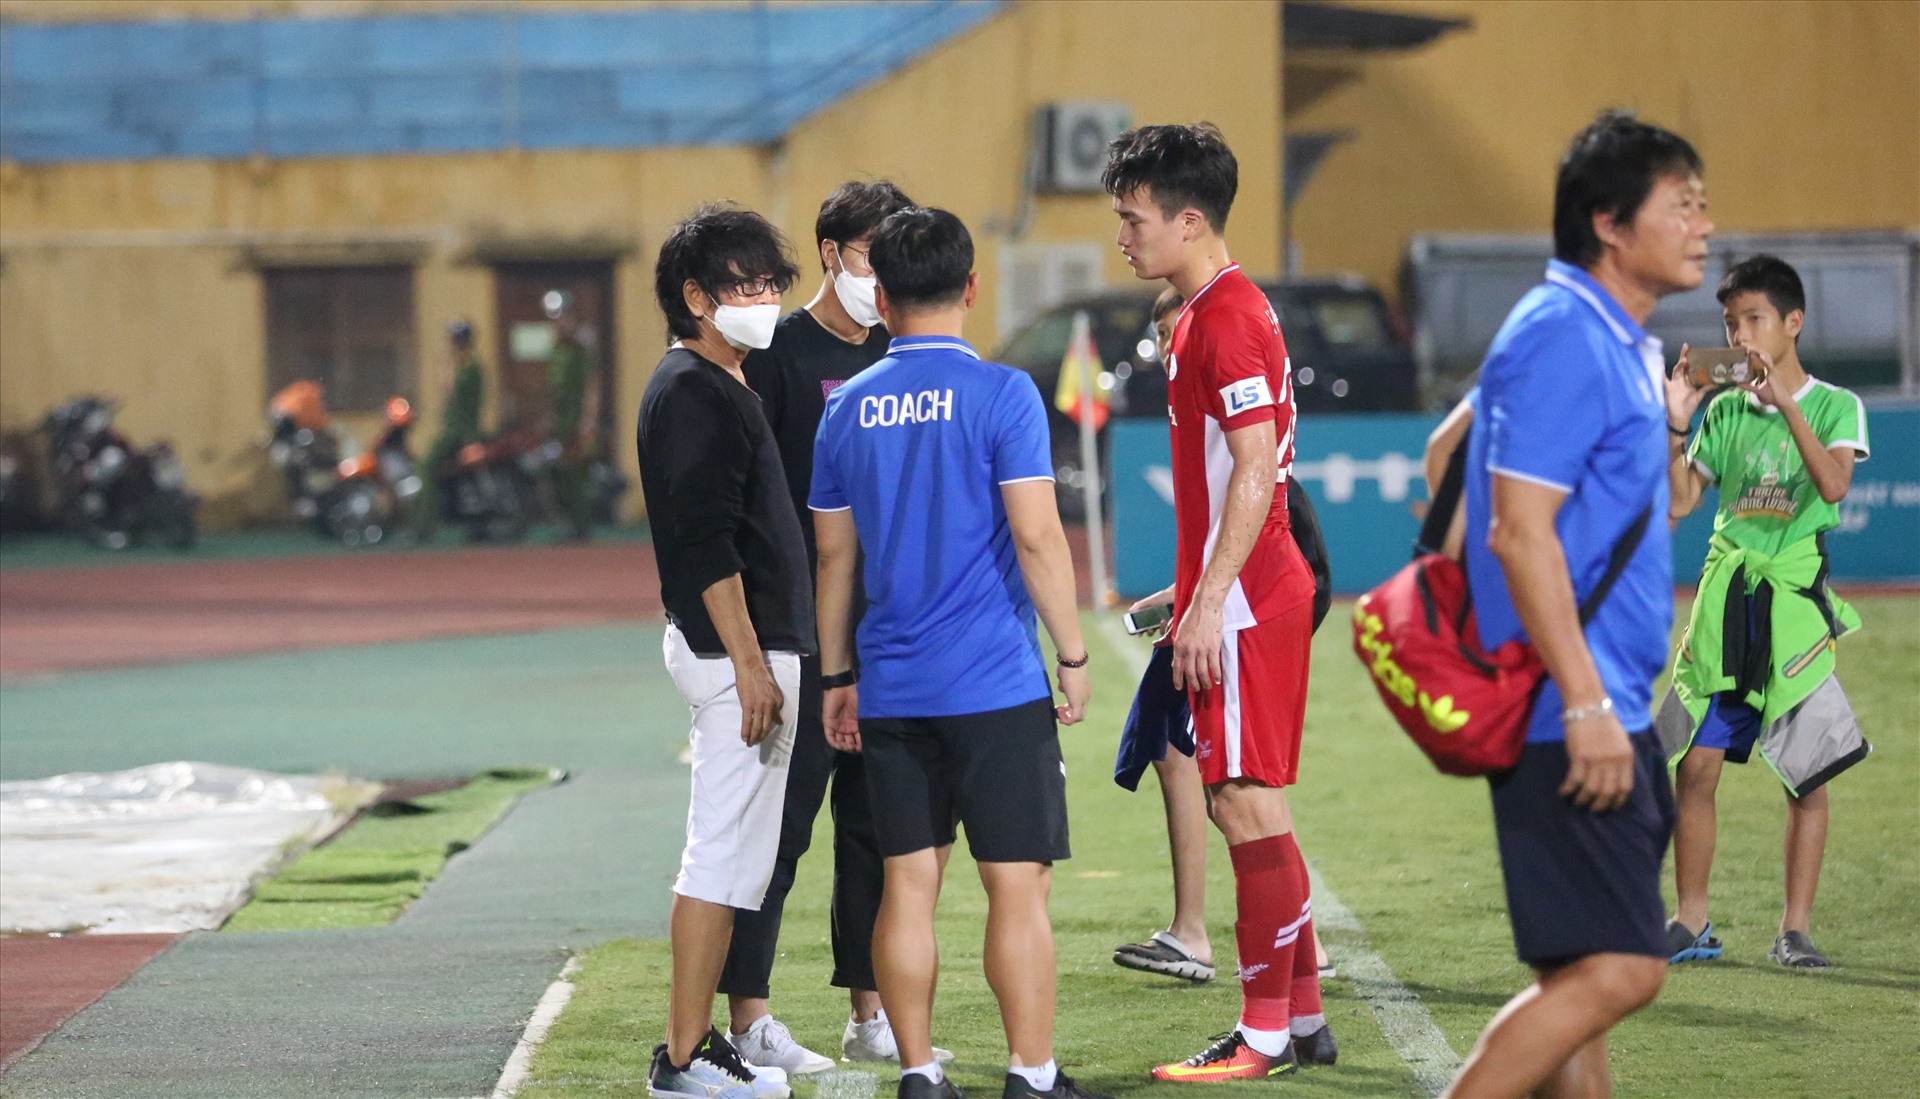 Cuối trận đấu chuyên gia Choi Ju Young cùng trợ lý thể lực xuống hỏi thăm các cầu thủ.